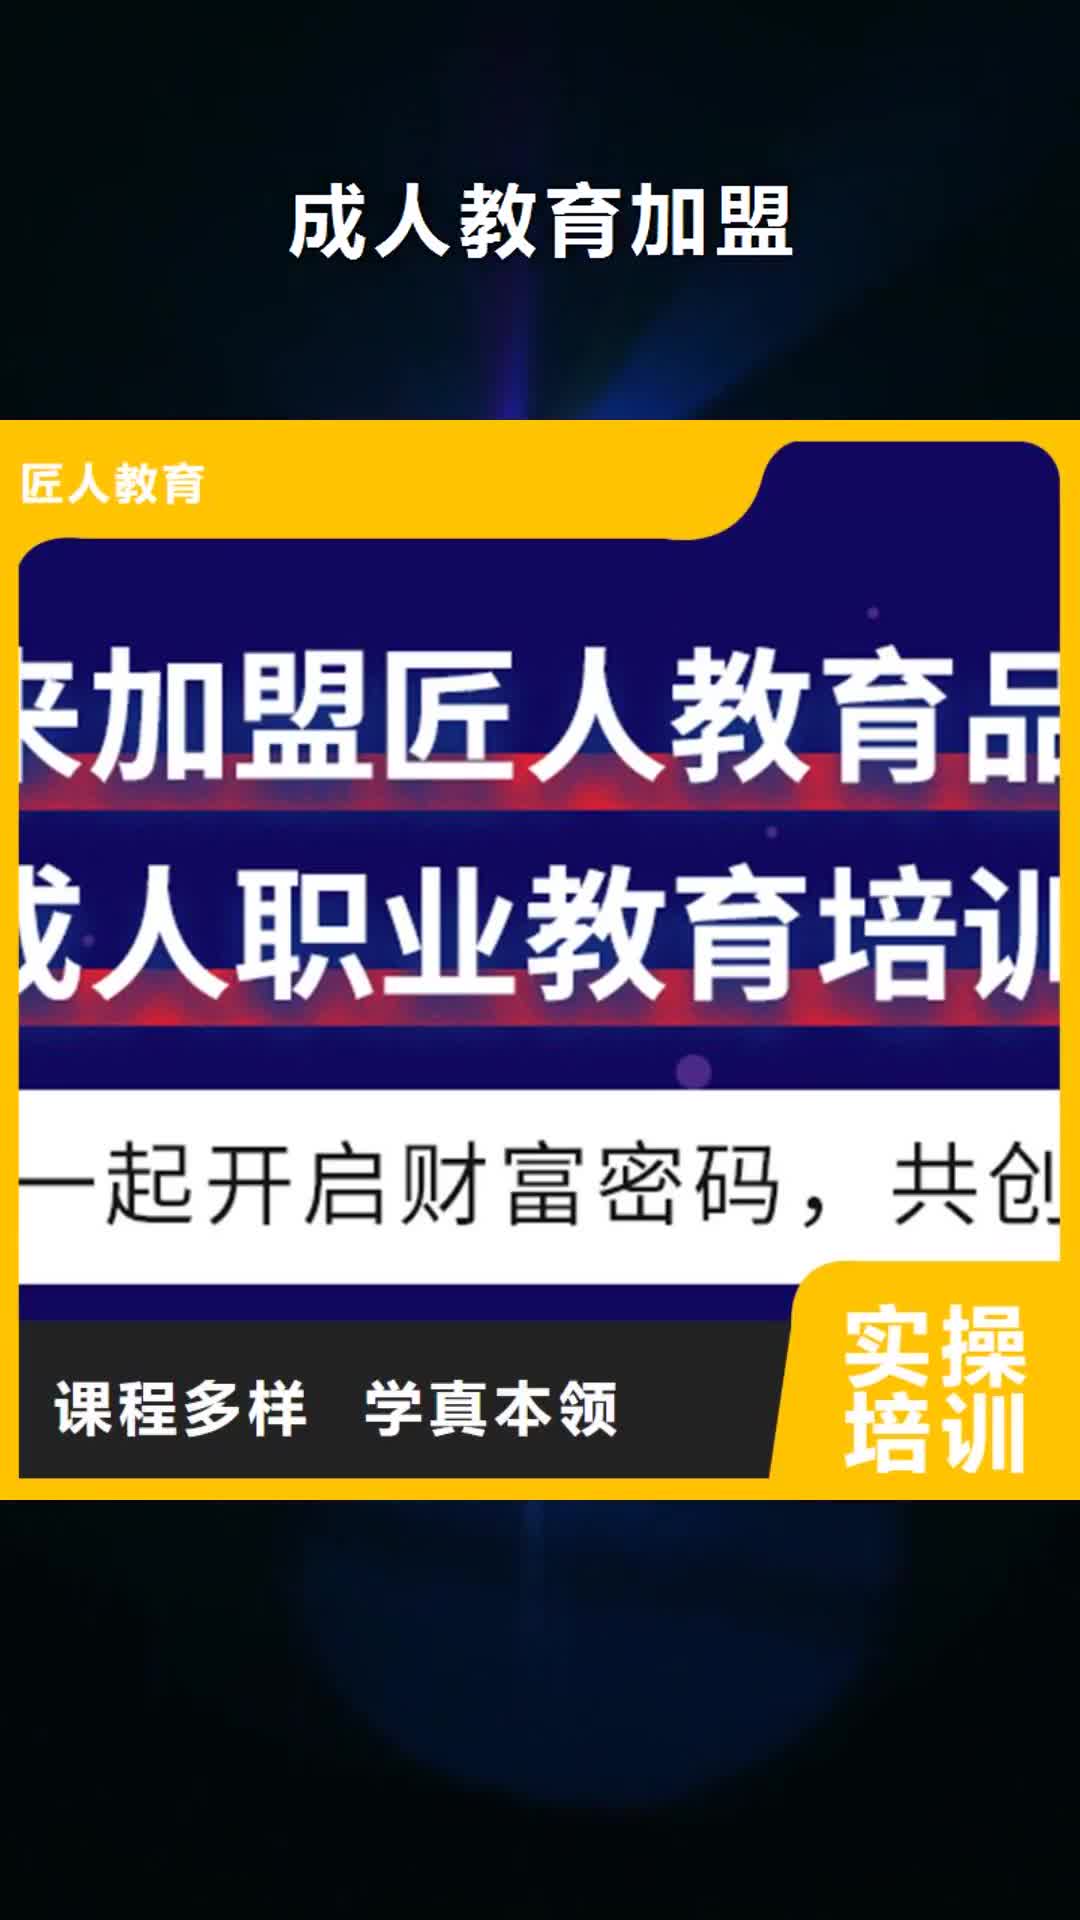 连云港【成人教育加盟】,党建培训机构师资力量强